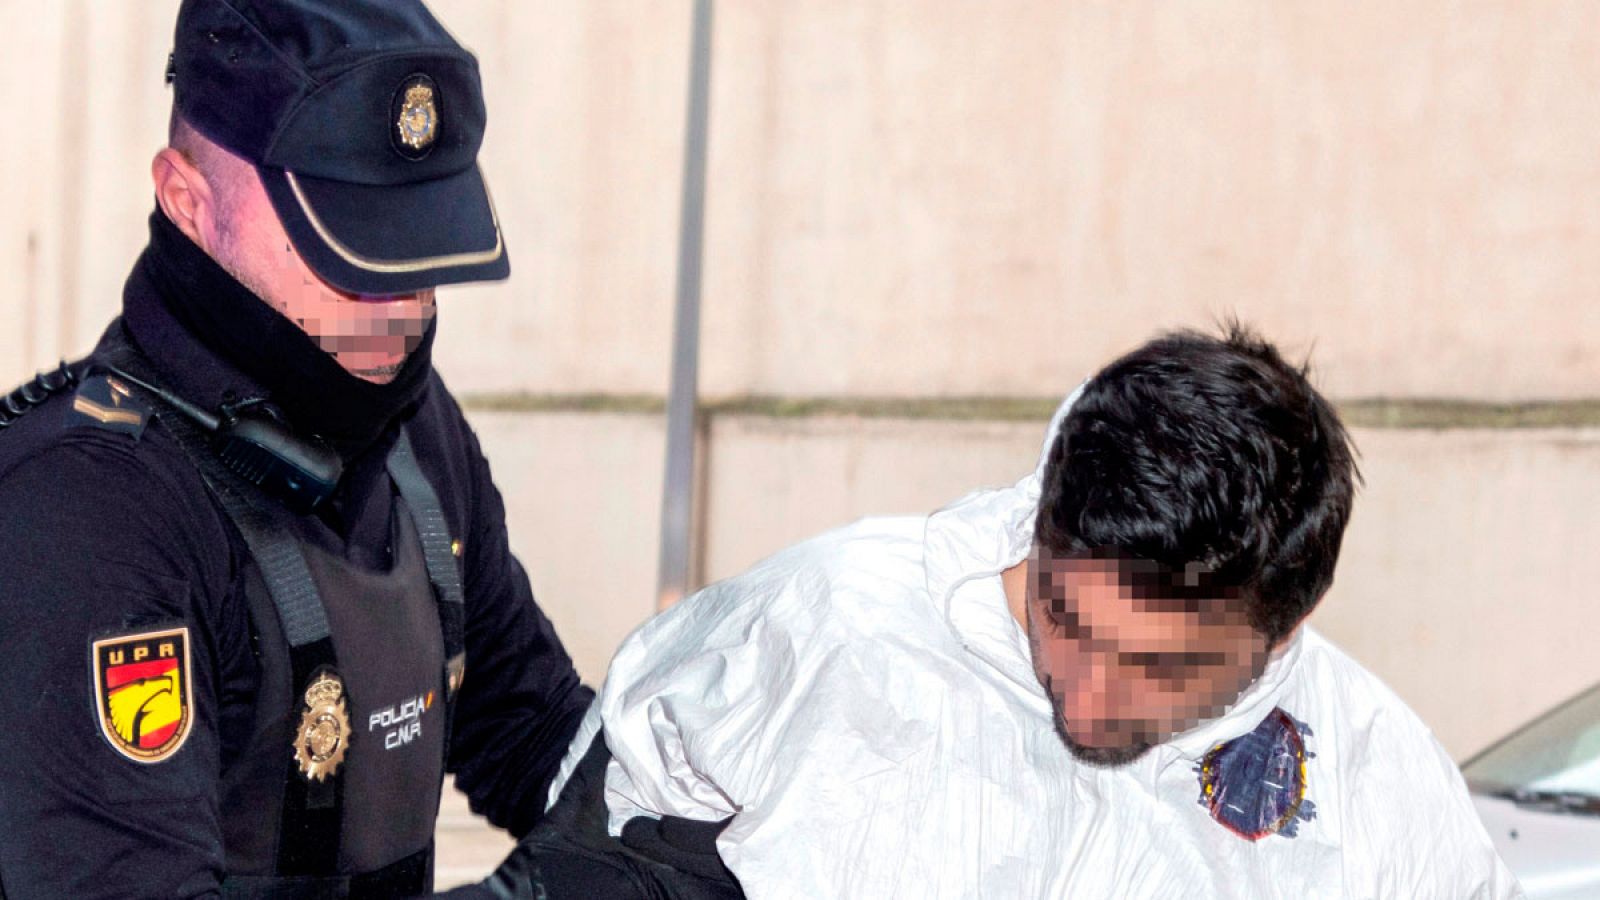 Rafael P., detenido por matar a su expareja en una tienda de muebles el pasado viernes en Palma